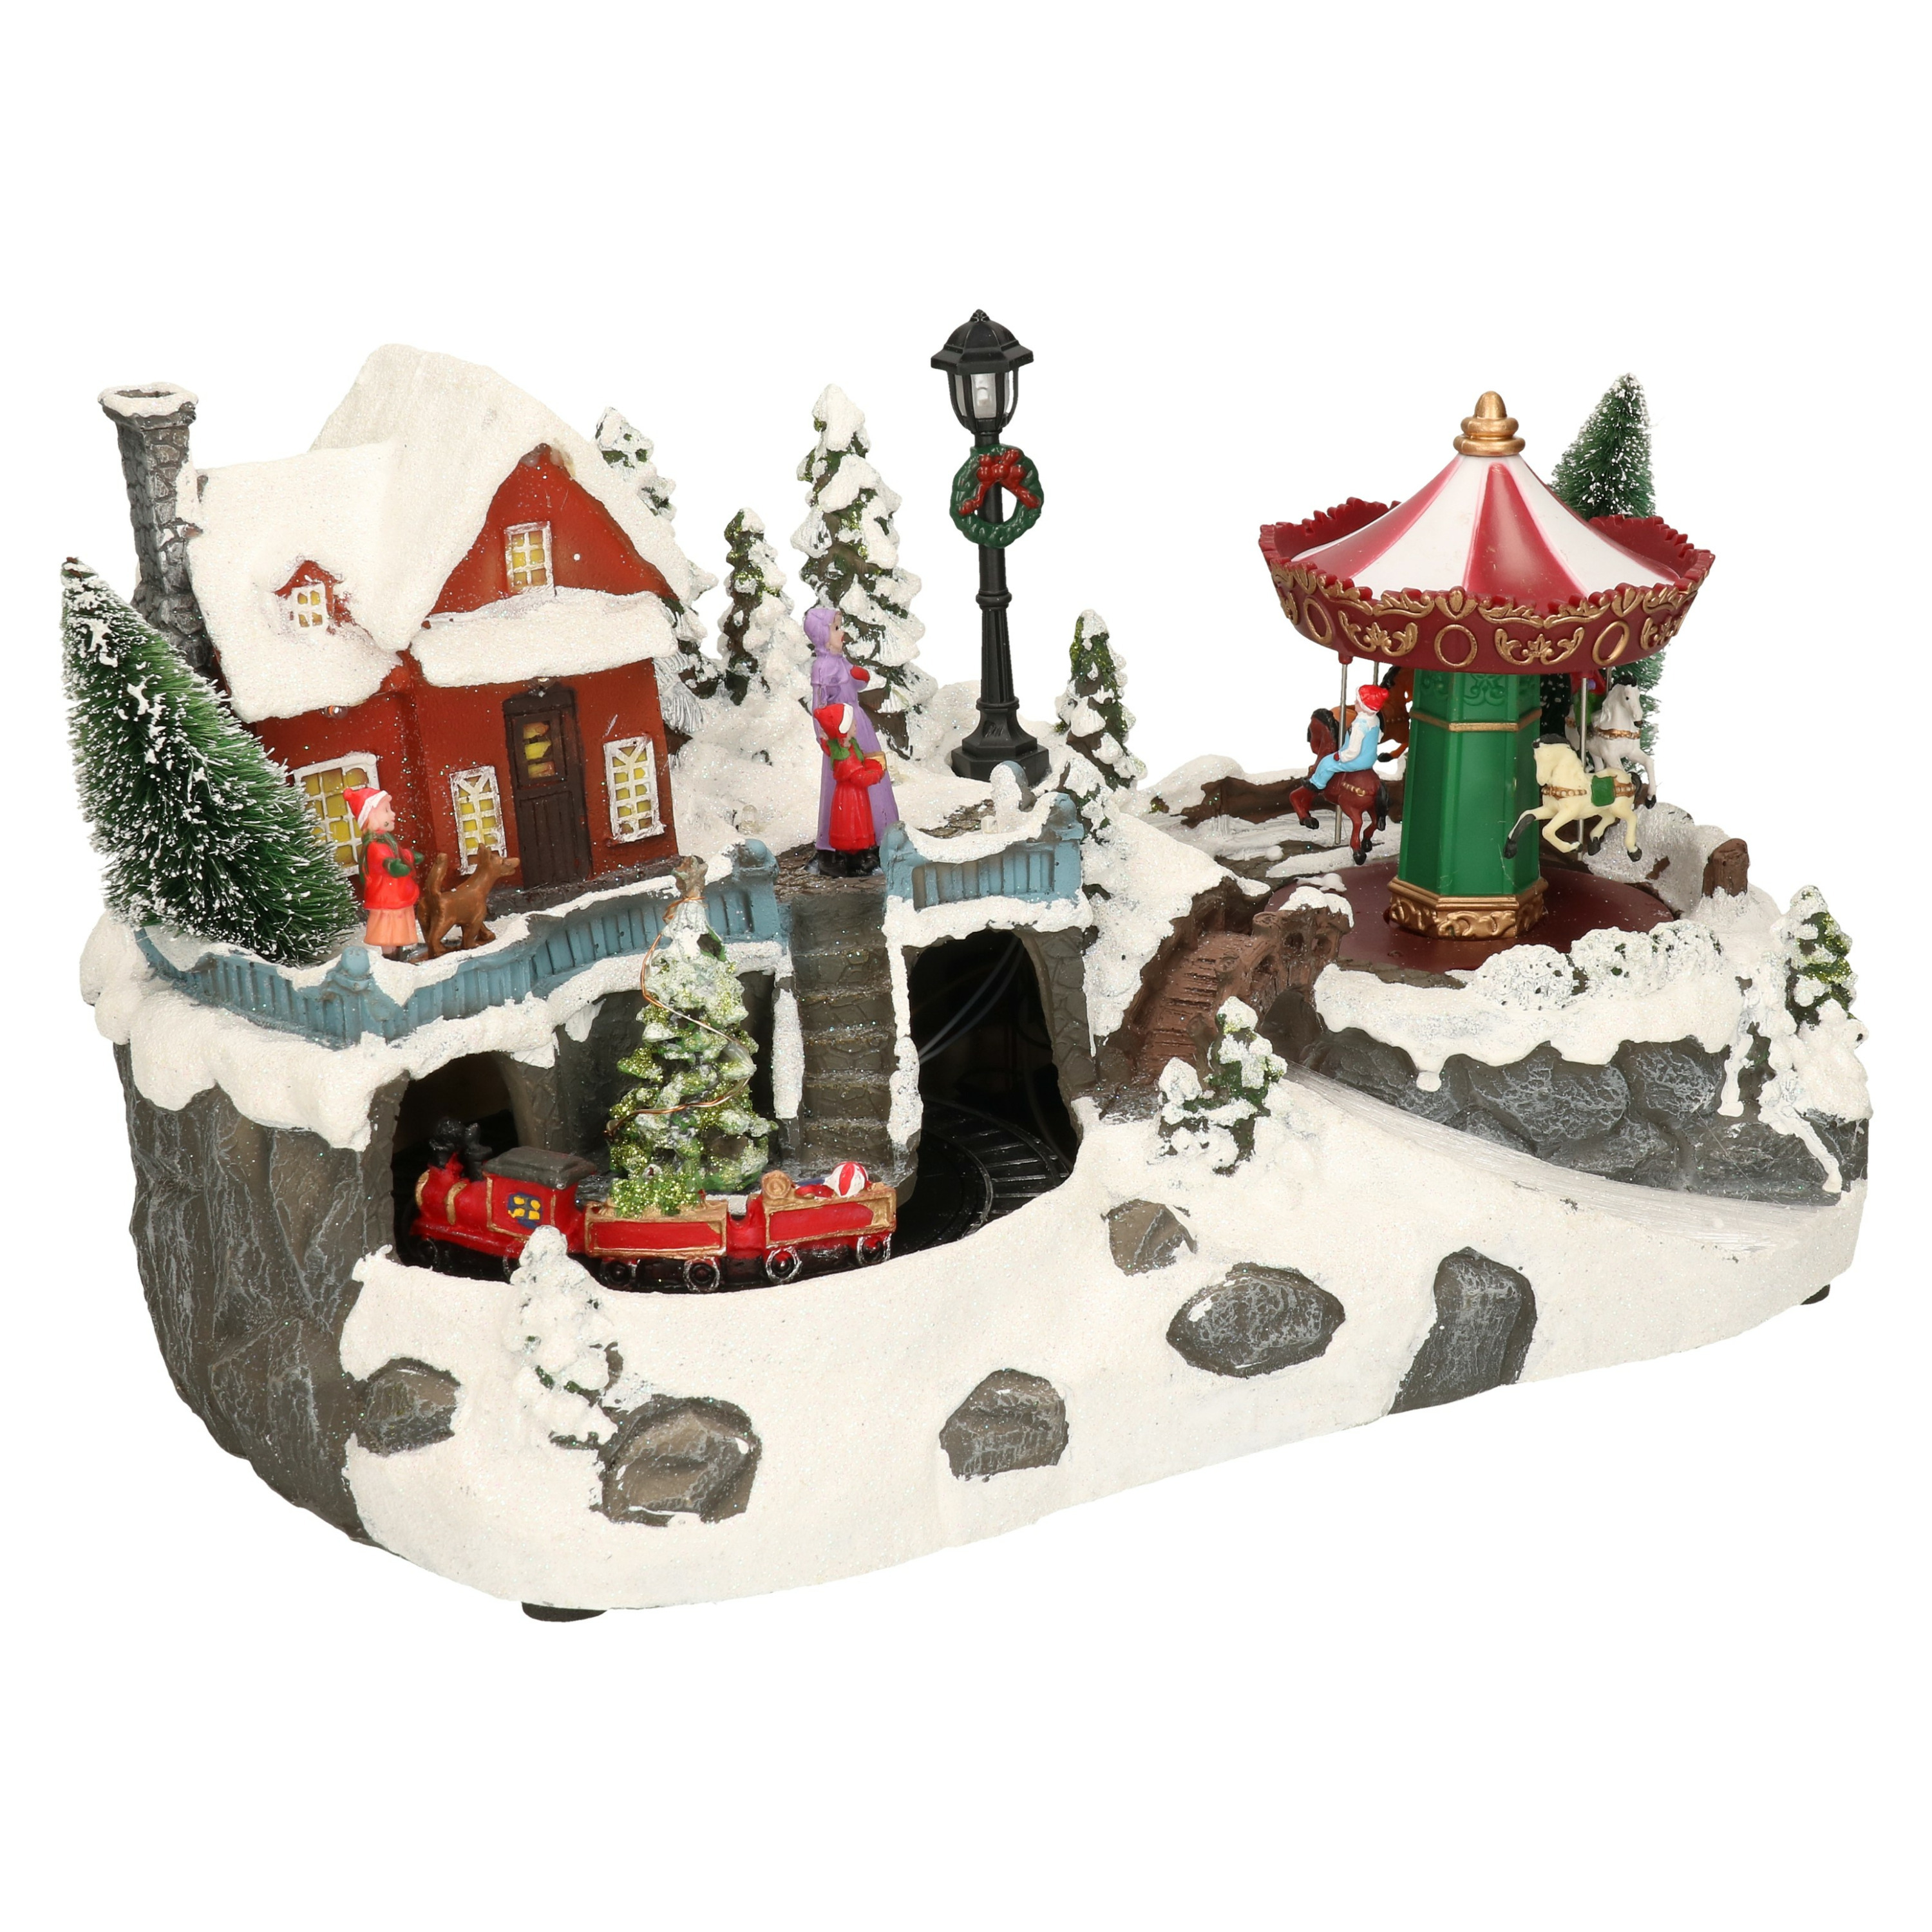 Kerstdorp kersttafereel met draaiende carrousel -met verlichting- 34 cm